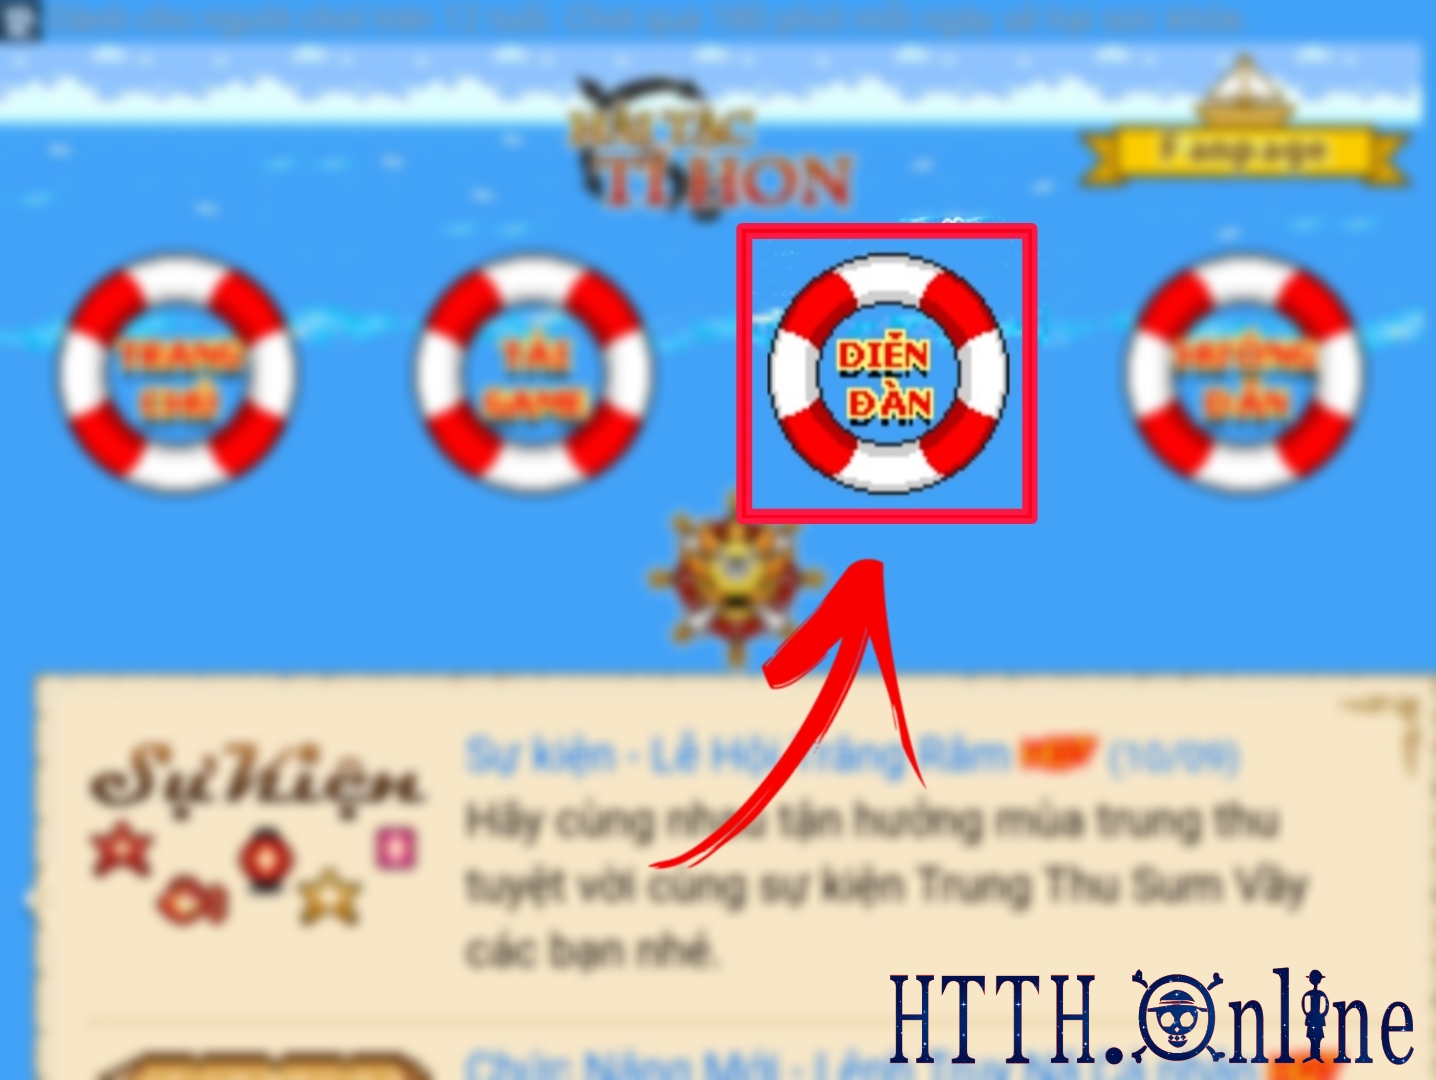 Hải Tặc Tí Hon: hướng dẫn đổi mật khẩu trong game HTTH